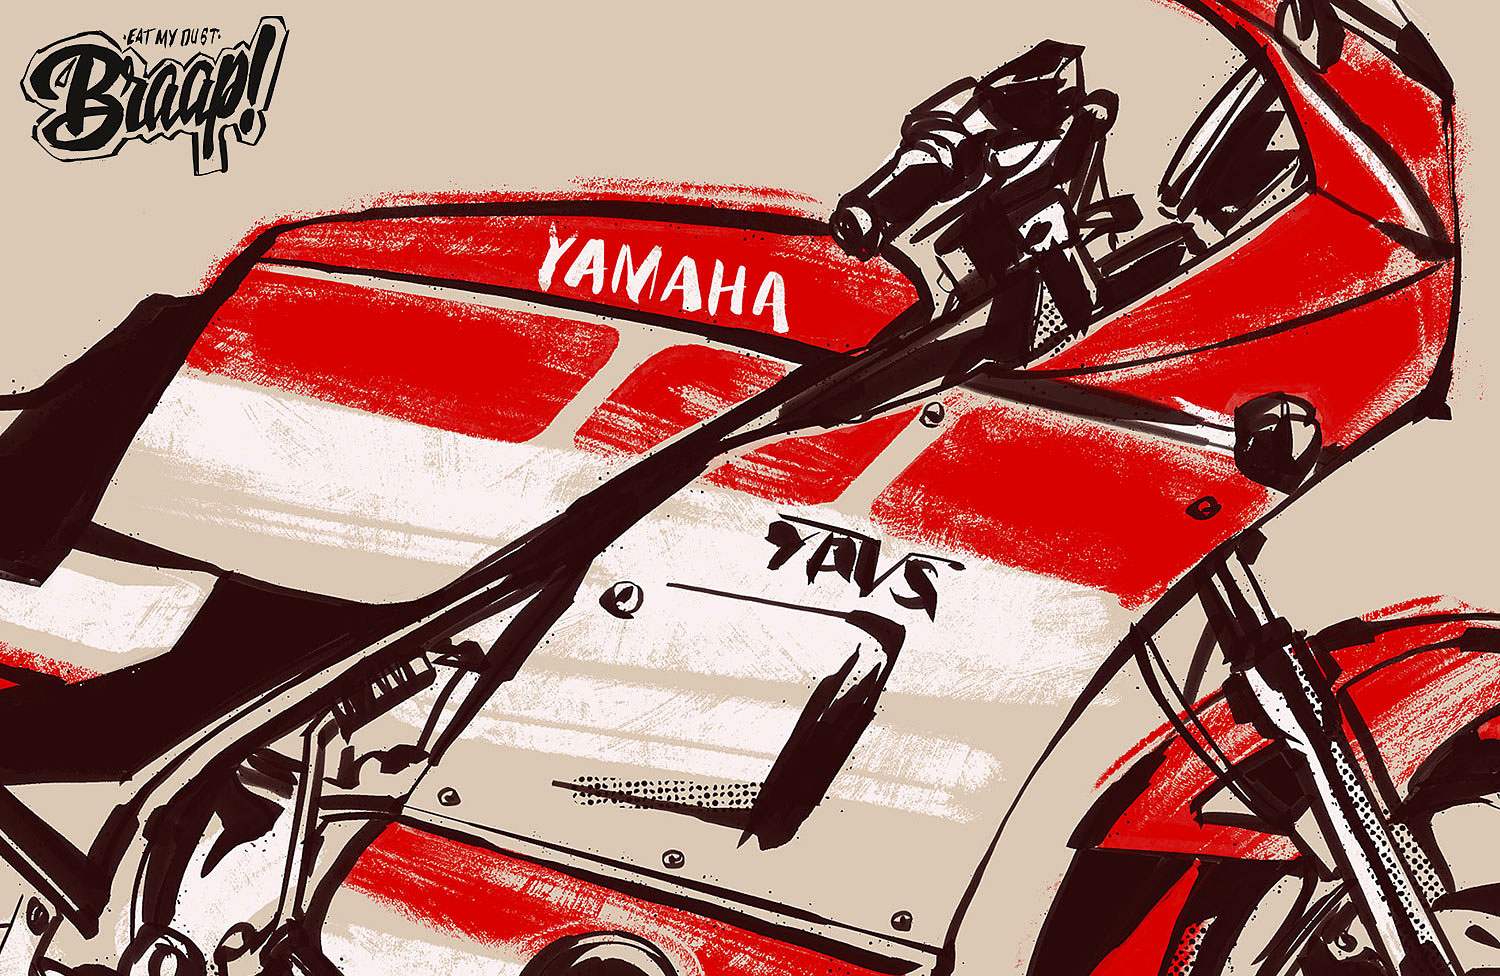 Yamaha rd350 byBrusco